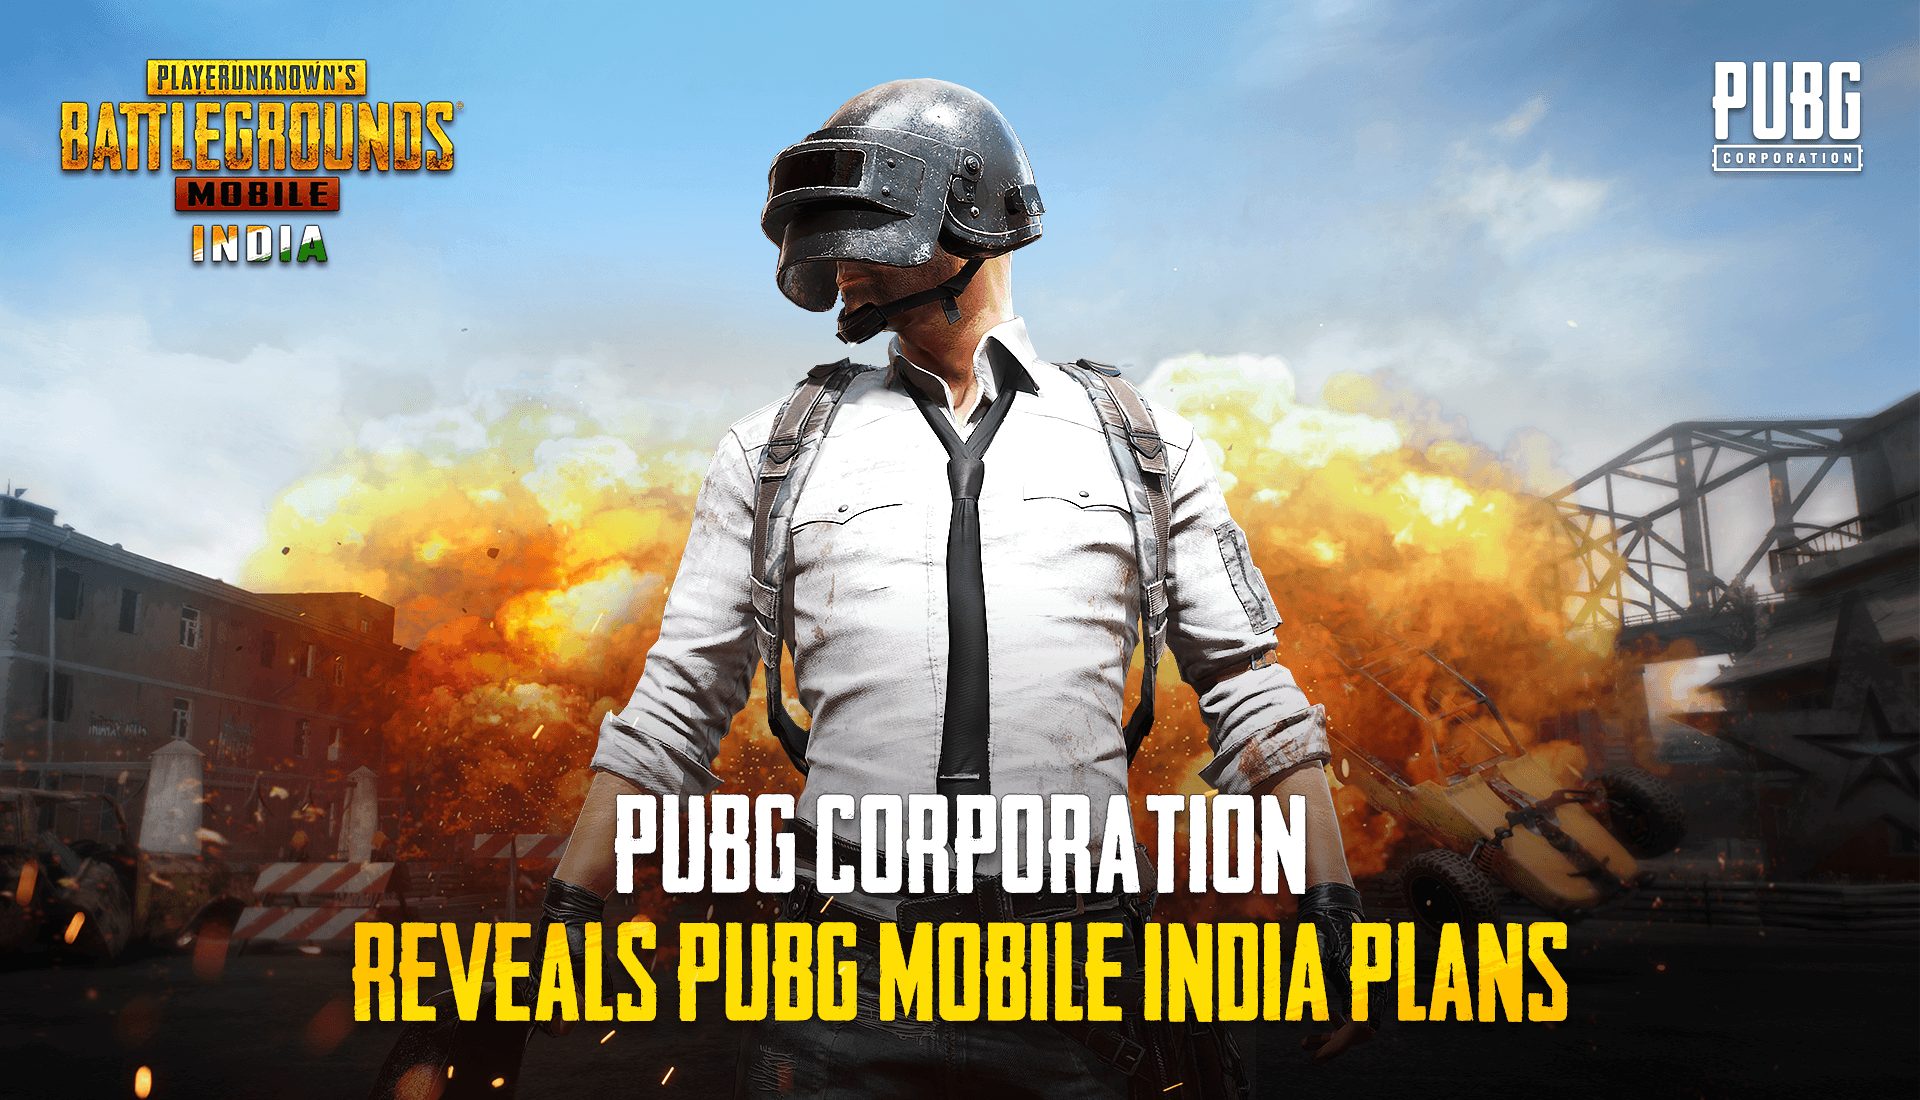 pubg-corporation-reveals-pubg-mobile-india-plans